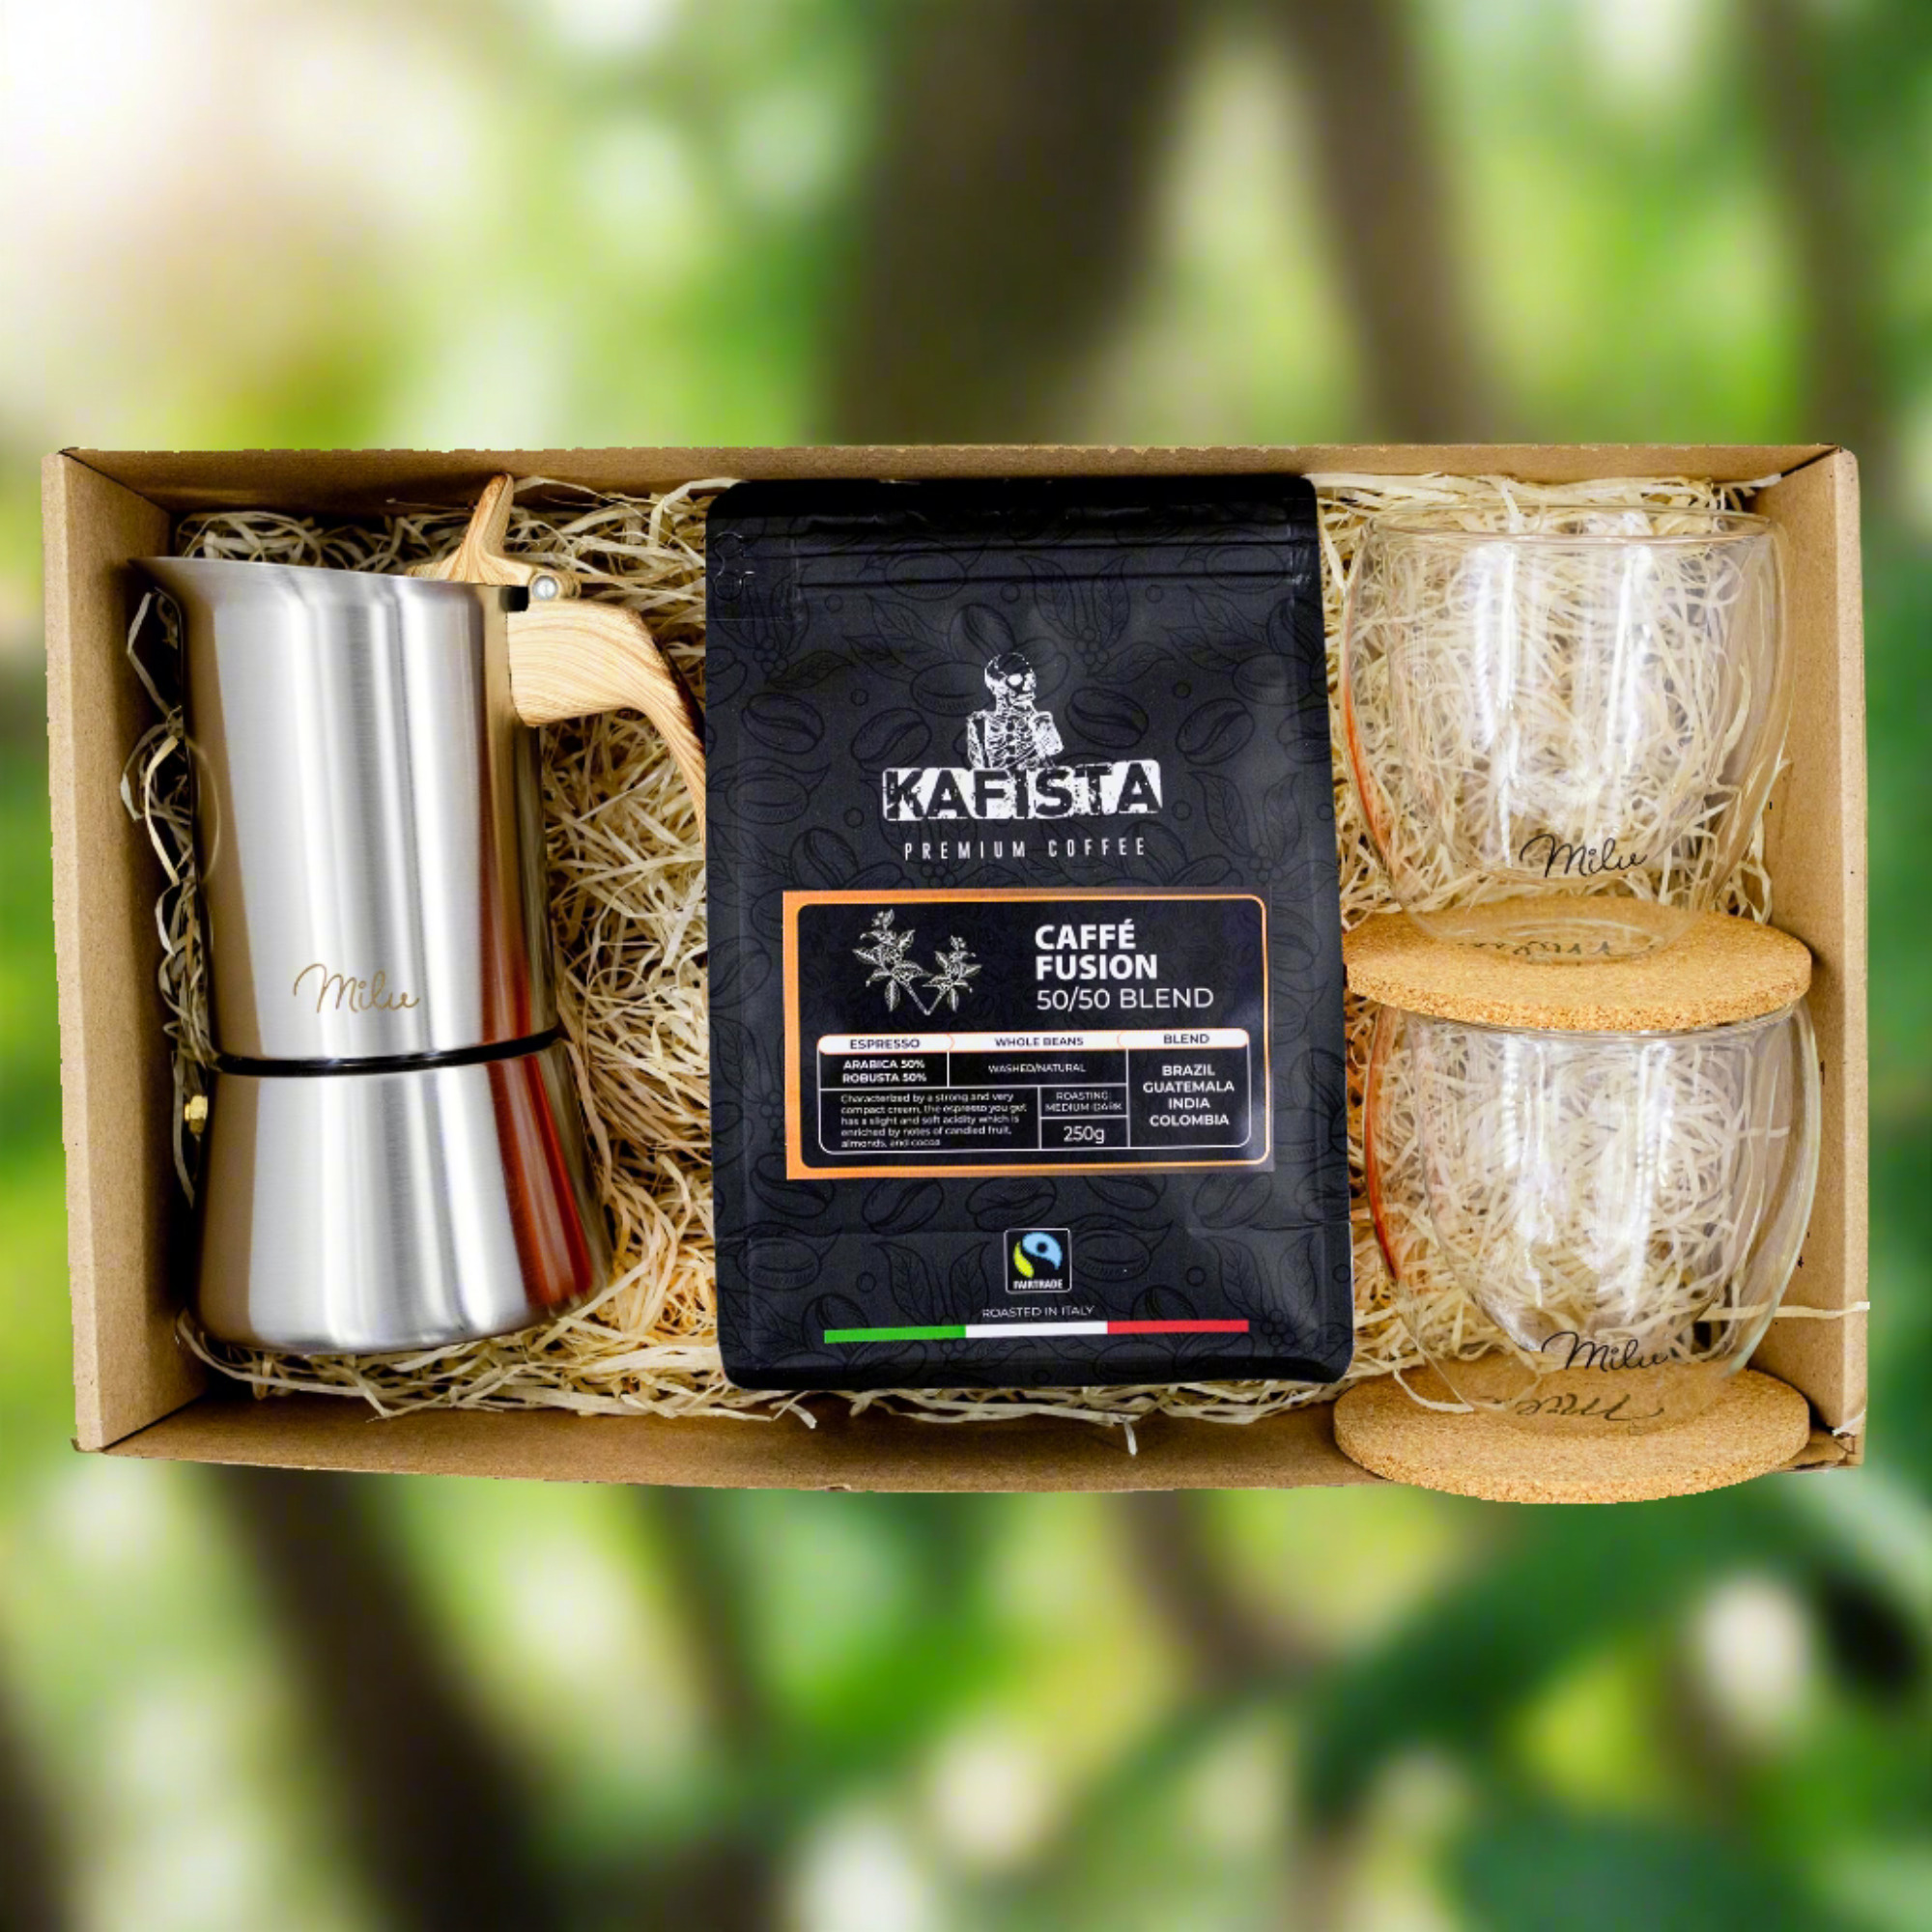 Moka 2 - Dárkový balíček s kávou Kafista a moka konvičkou - zrnková káva pražená v Itálii